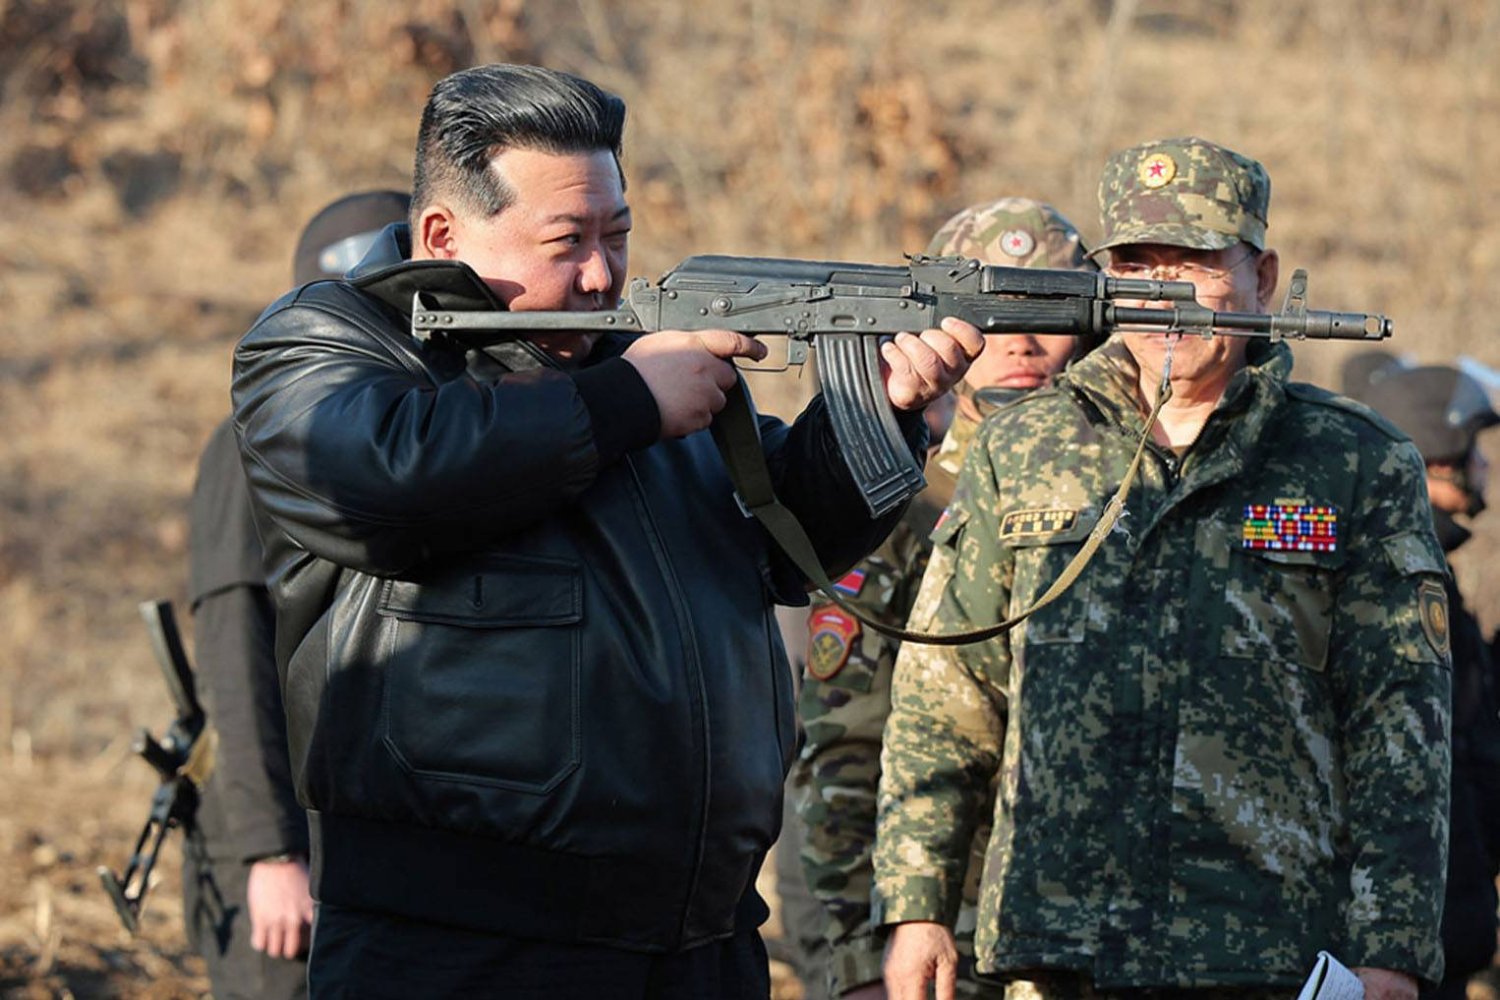 زعيم كوريا الشمالية يدعو إلى إحداث "تغيير تاريخي" في الاستعدادات للحرب